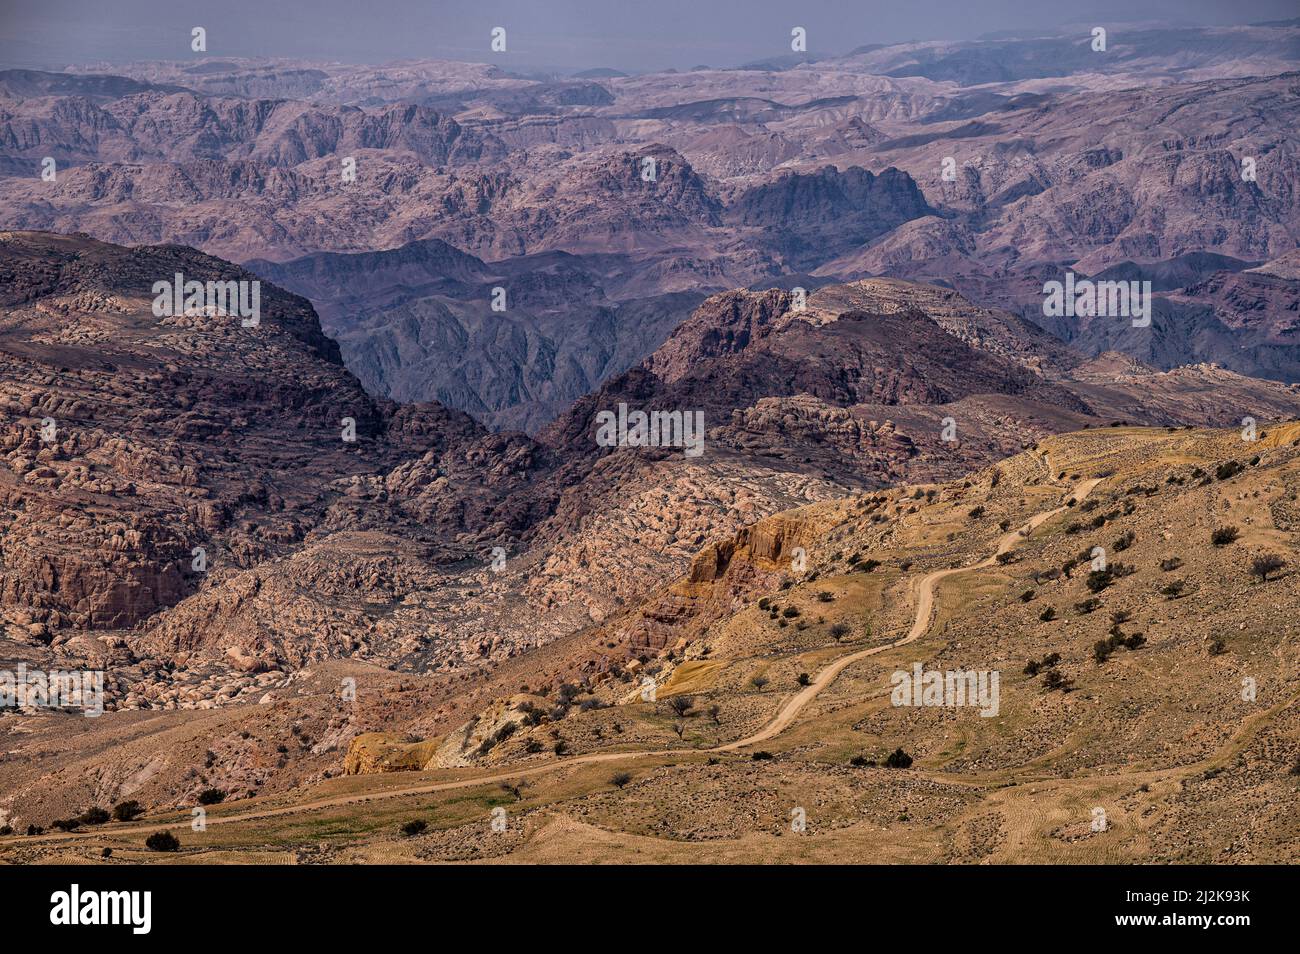 Desert landscape of the mountains of Edom, Jordan. Stock Photo